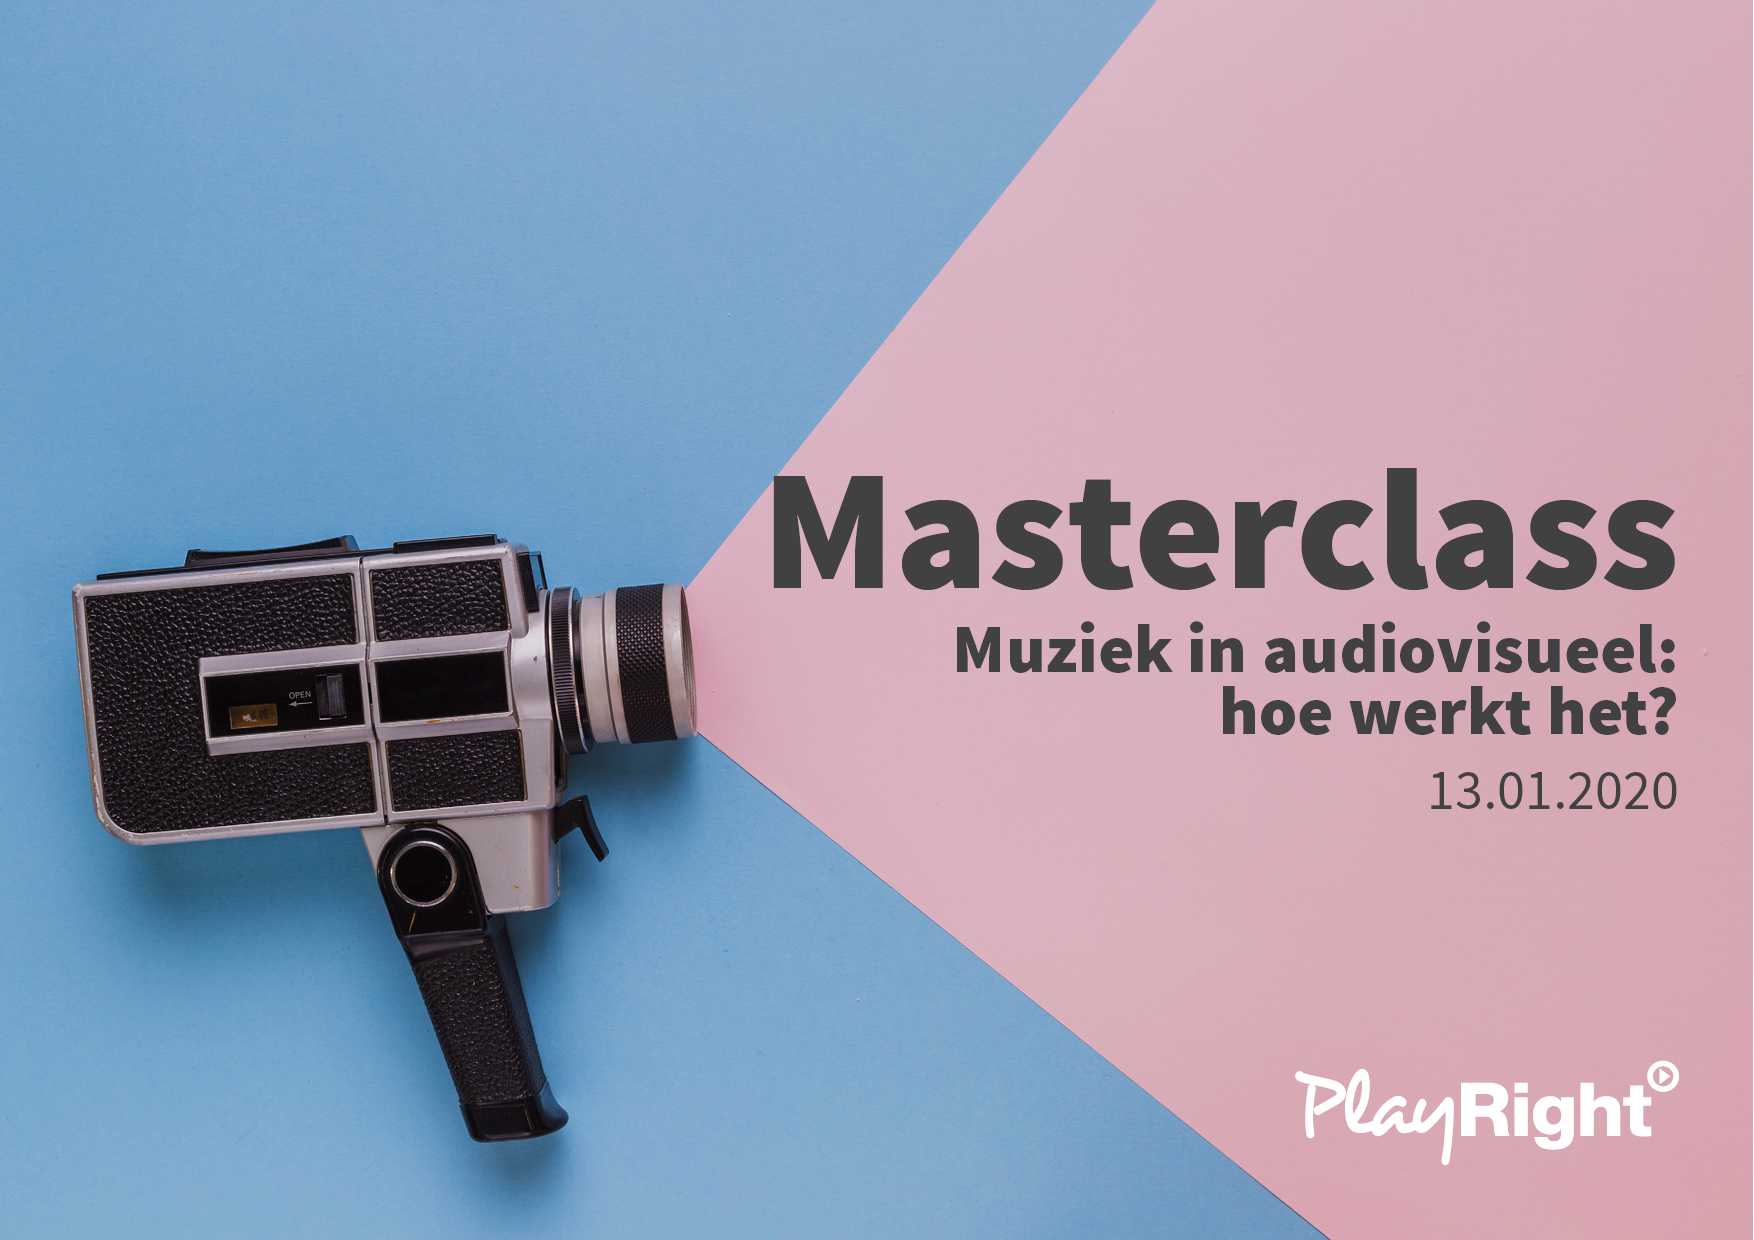 Masterclass “Muziek in audiovisueel: hoe werkt het?”